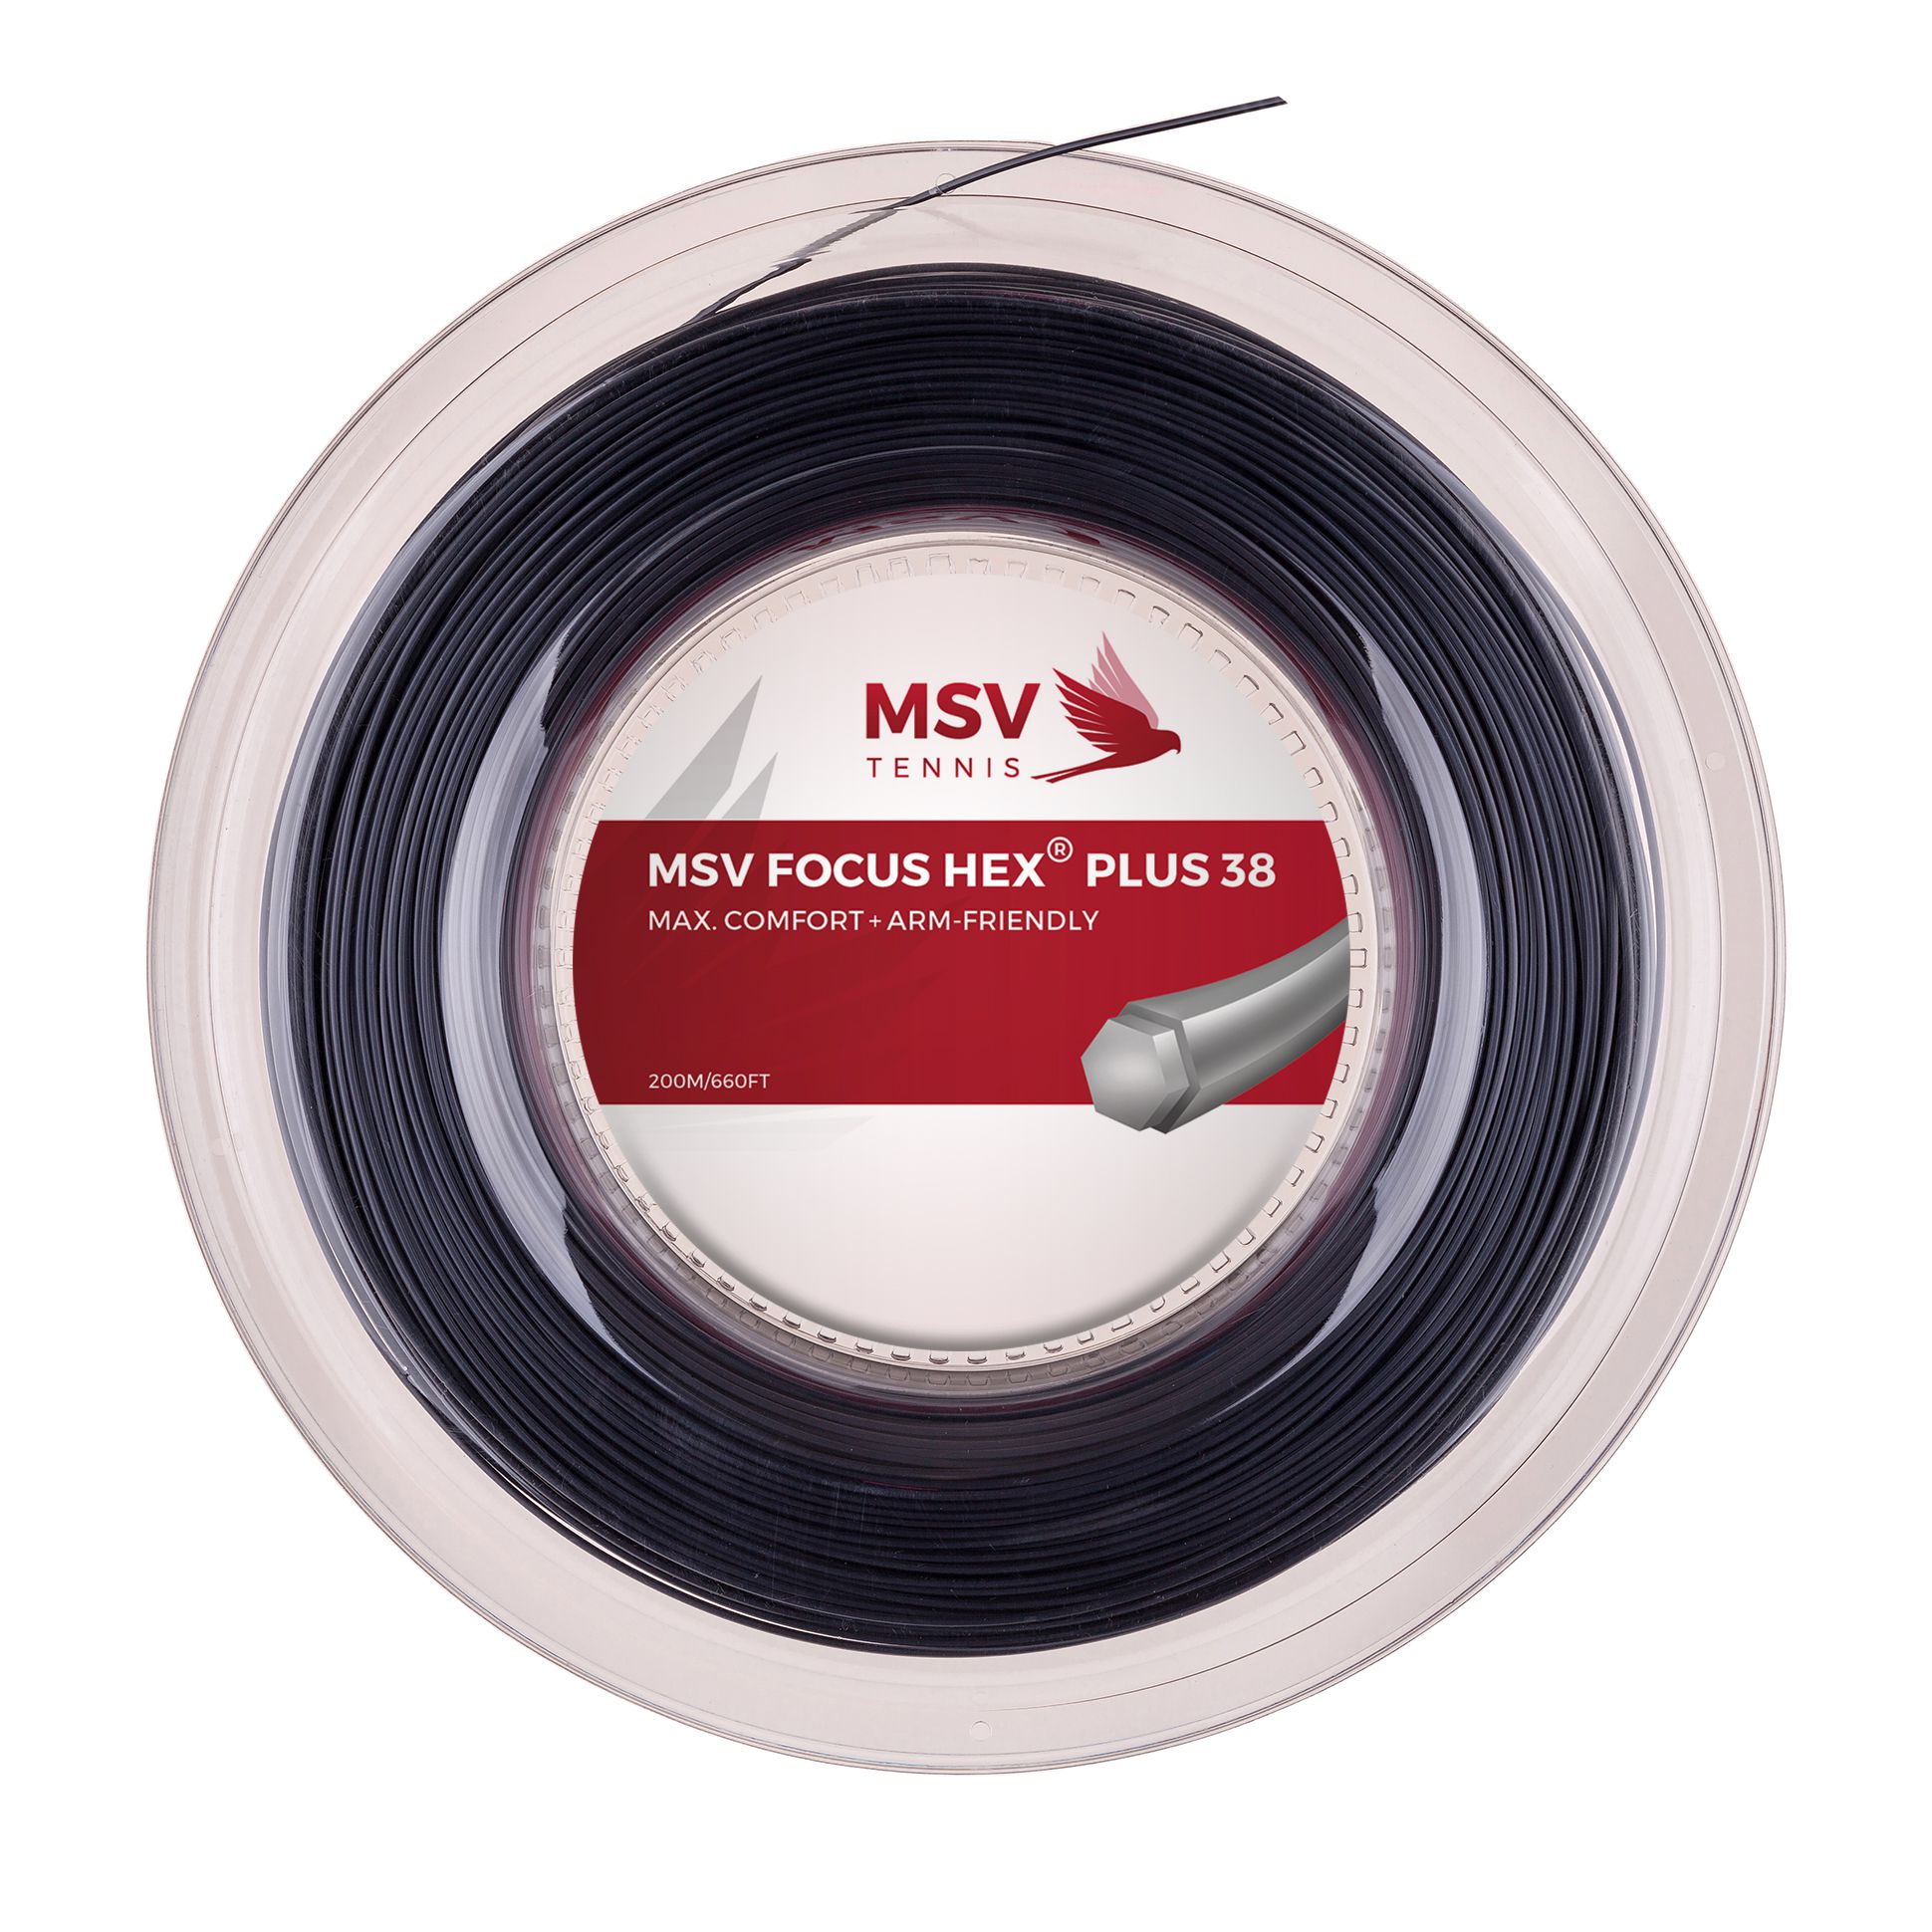 MSV Focus HEX® Plus 38 Tennissaite 200m